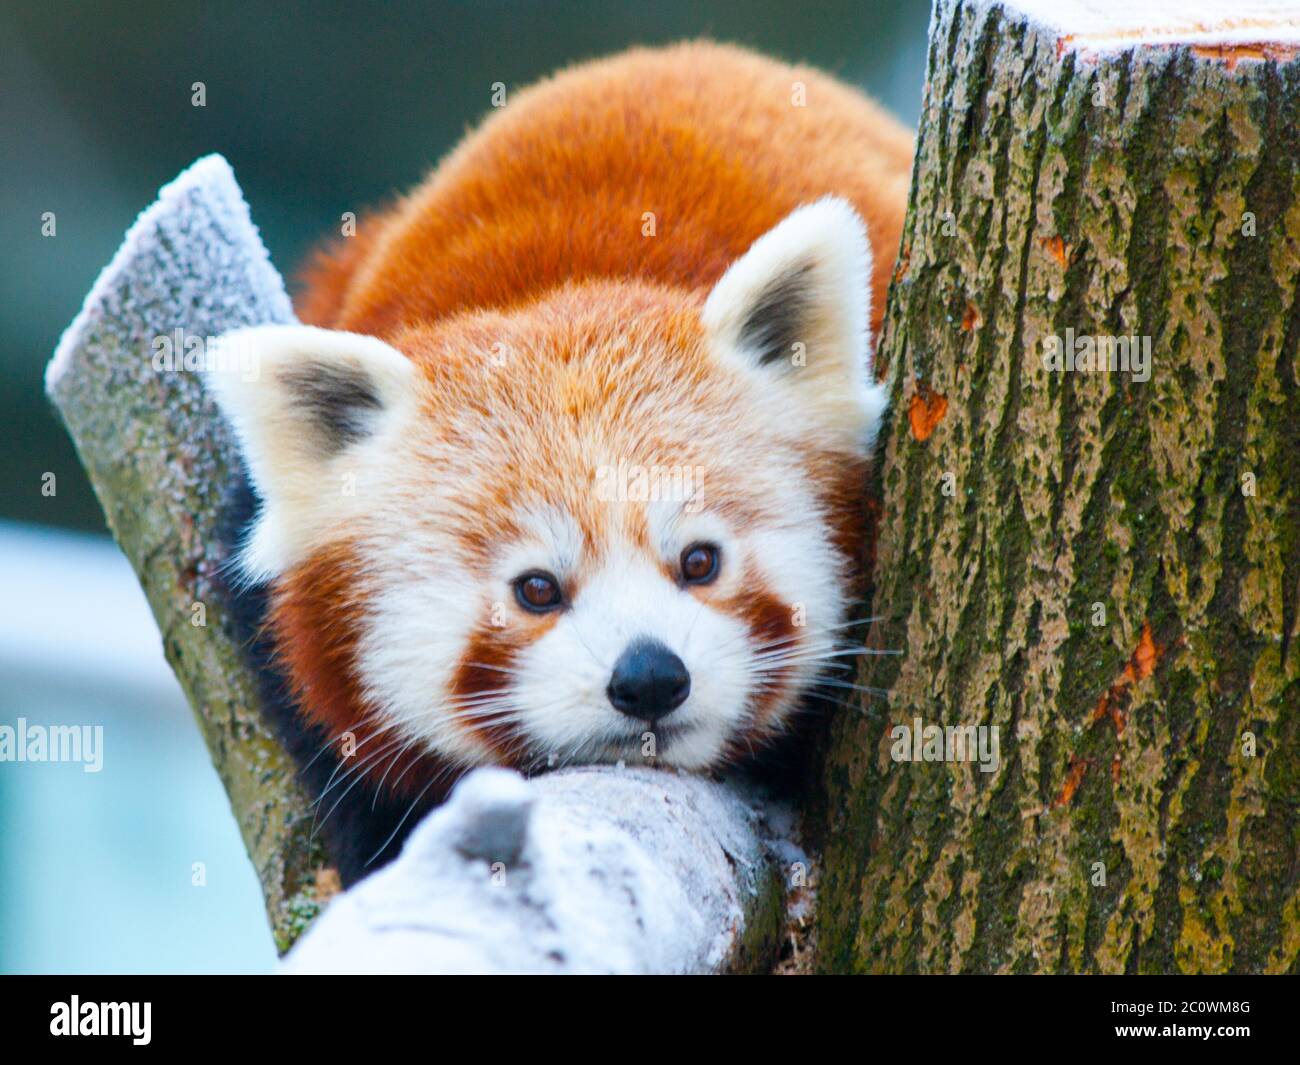 Red panda, aka lesser panda, Ailurus fulgens, lying on a branch. Stock Photo